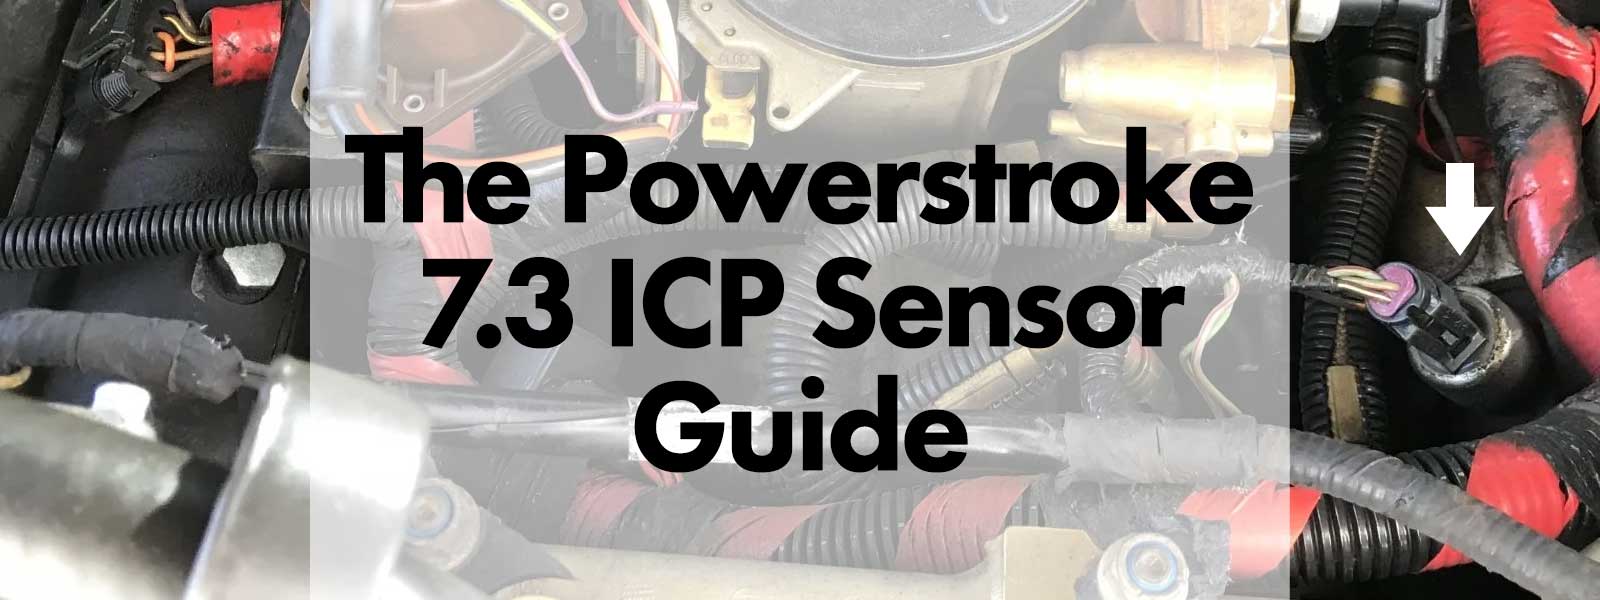 The Powerstroke 7.3 ICP Sensor Guide